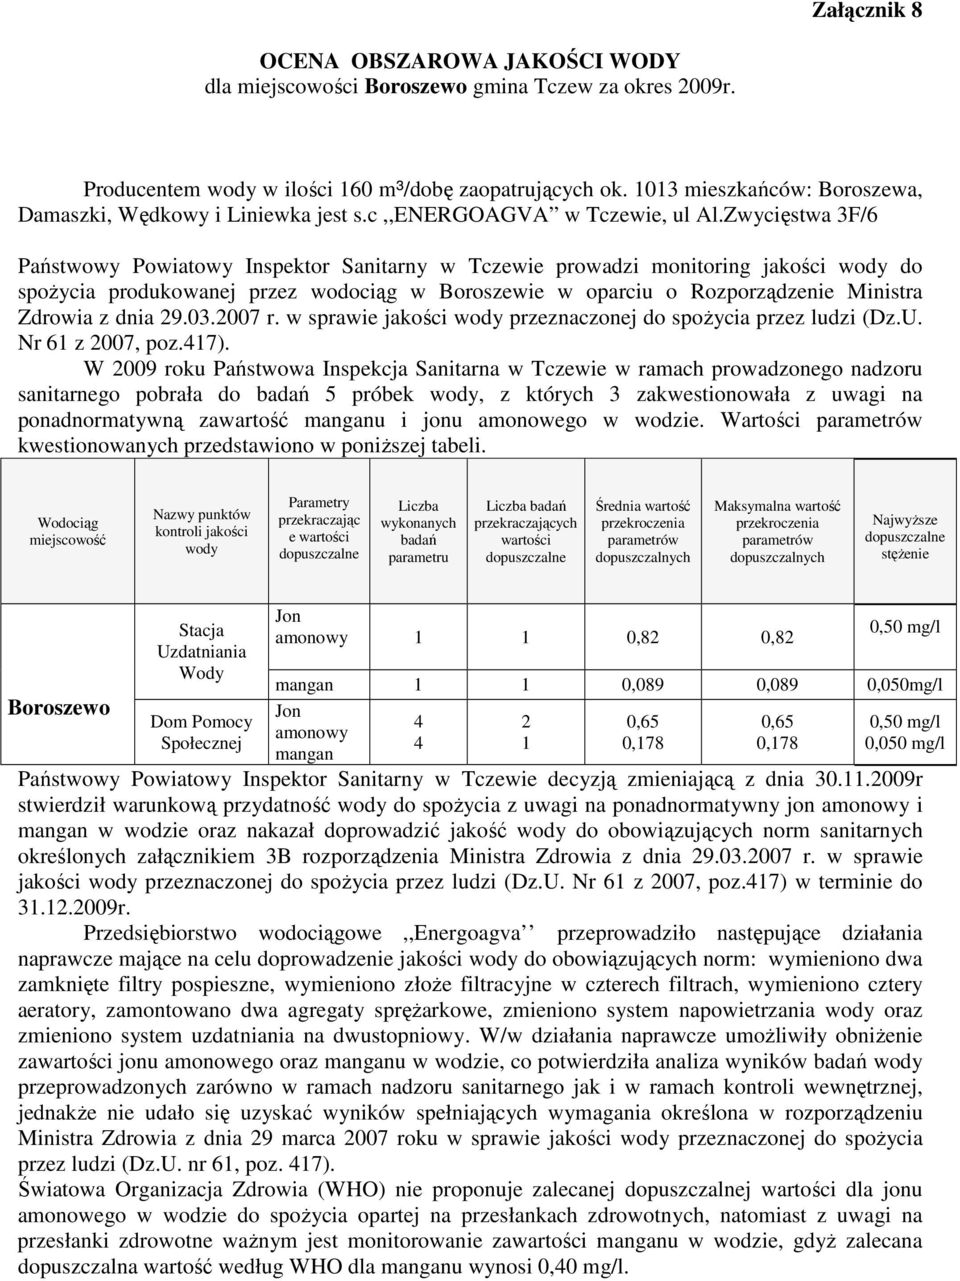 Zwycięstwa 3F/6 spoŝycia produkowanej przez wodociąg w Boroszewie w oparciu o Rozporządzenie Ministra sanitarnego pobrała do badań 5 próbek wody, z których 3 zakwestionowała z uwagi na